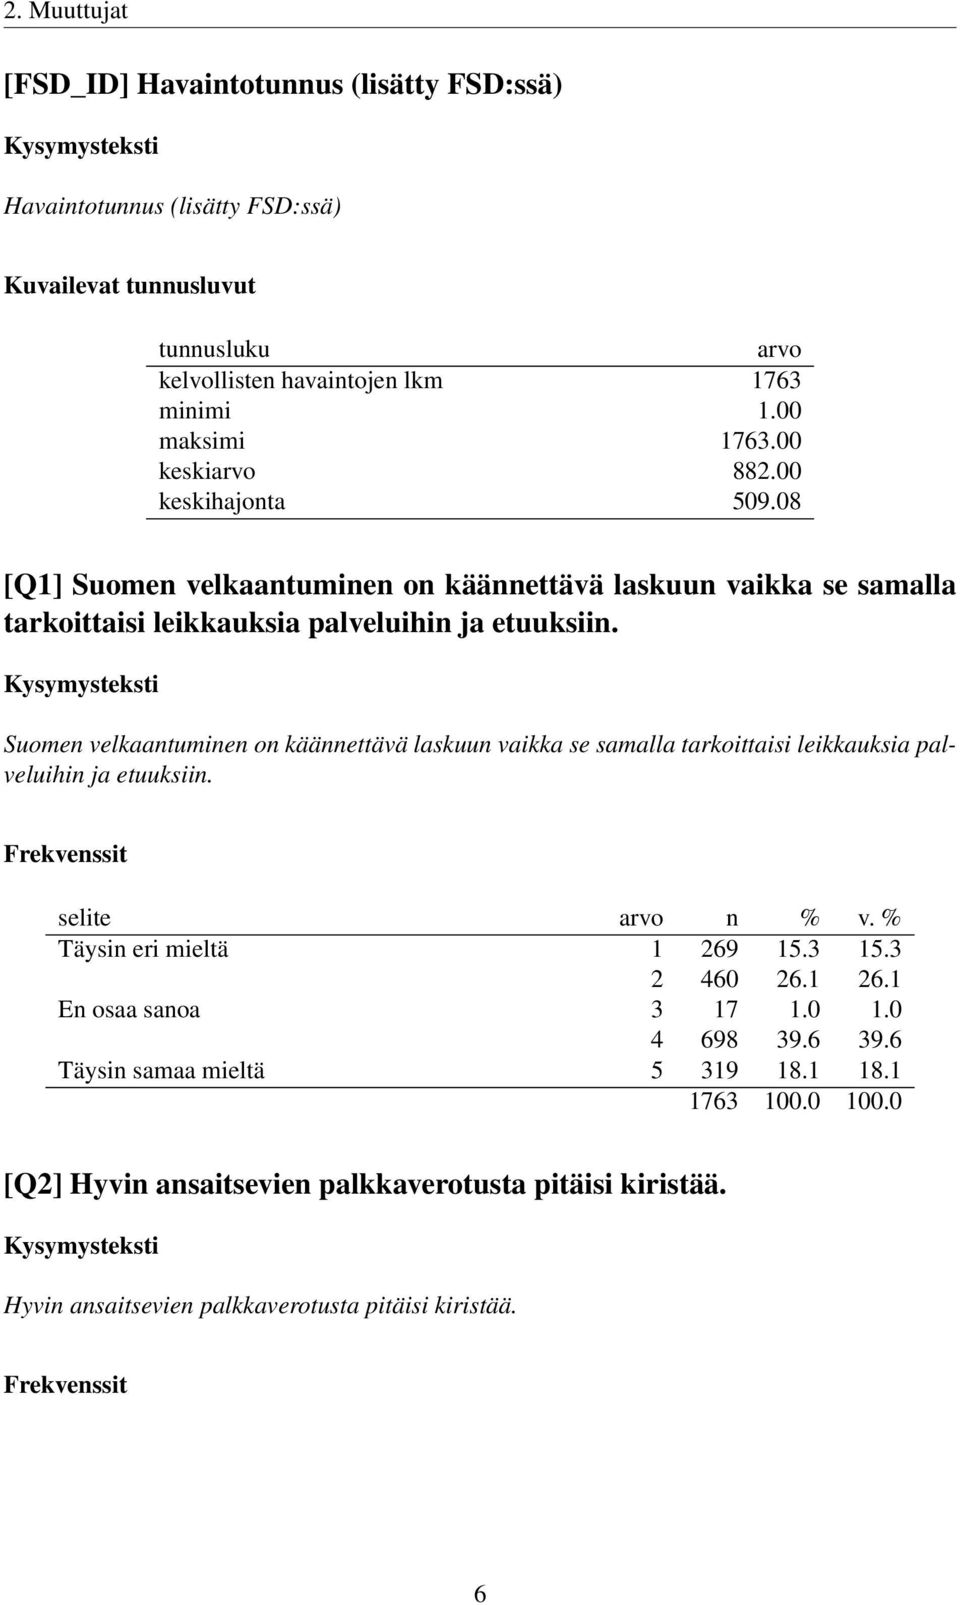 Suomen velkaantuminen on käännettävä laskuun vaikka se samalla tarkoittaisi leikkauksia palveluihin ja etuuksiin. Täysin eri mieltä 1 269 15.3 15.3 2 460 26.1 26.1 En osaa sanoa 3 17 1.